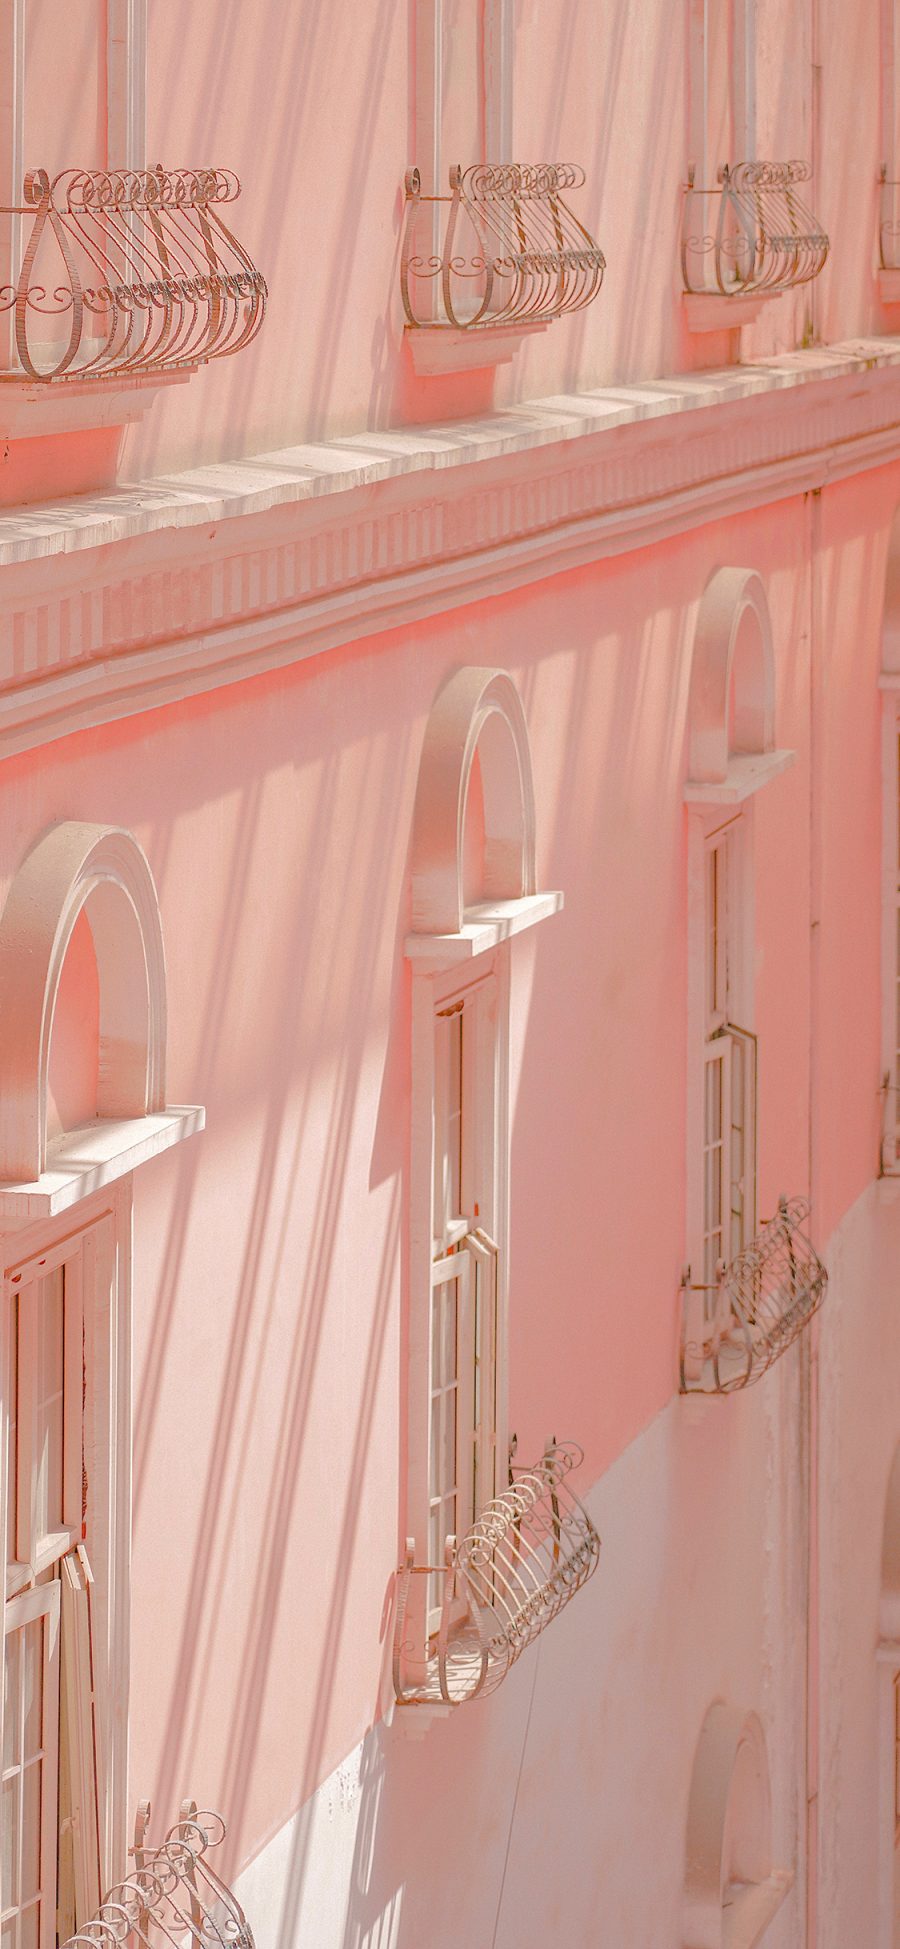 [2436×1125]窗户 建筑 粉色 墙壁 苹果手机壁纸图片